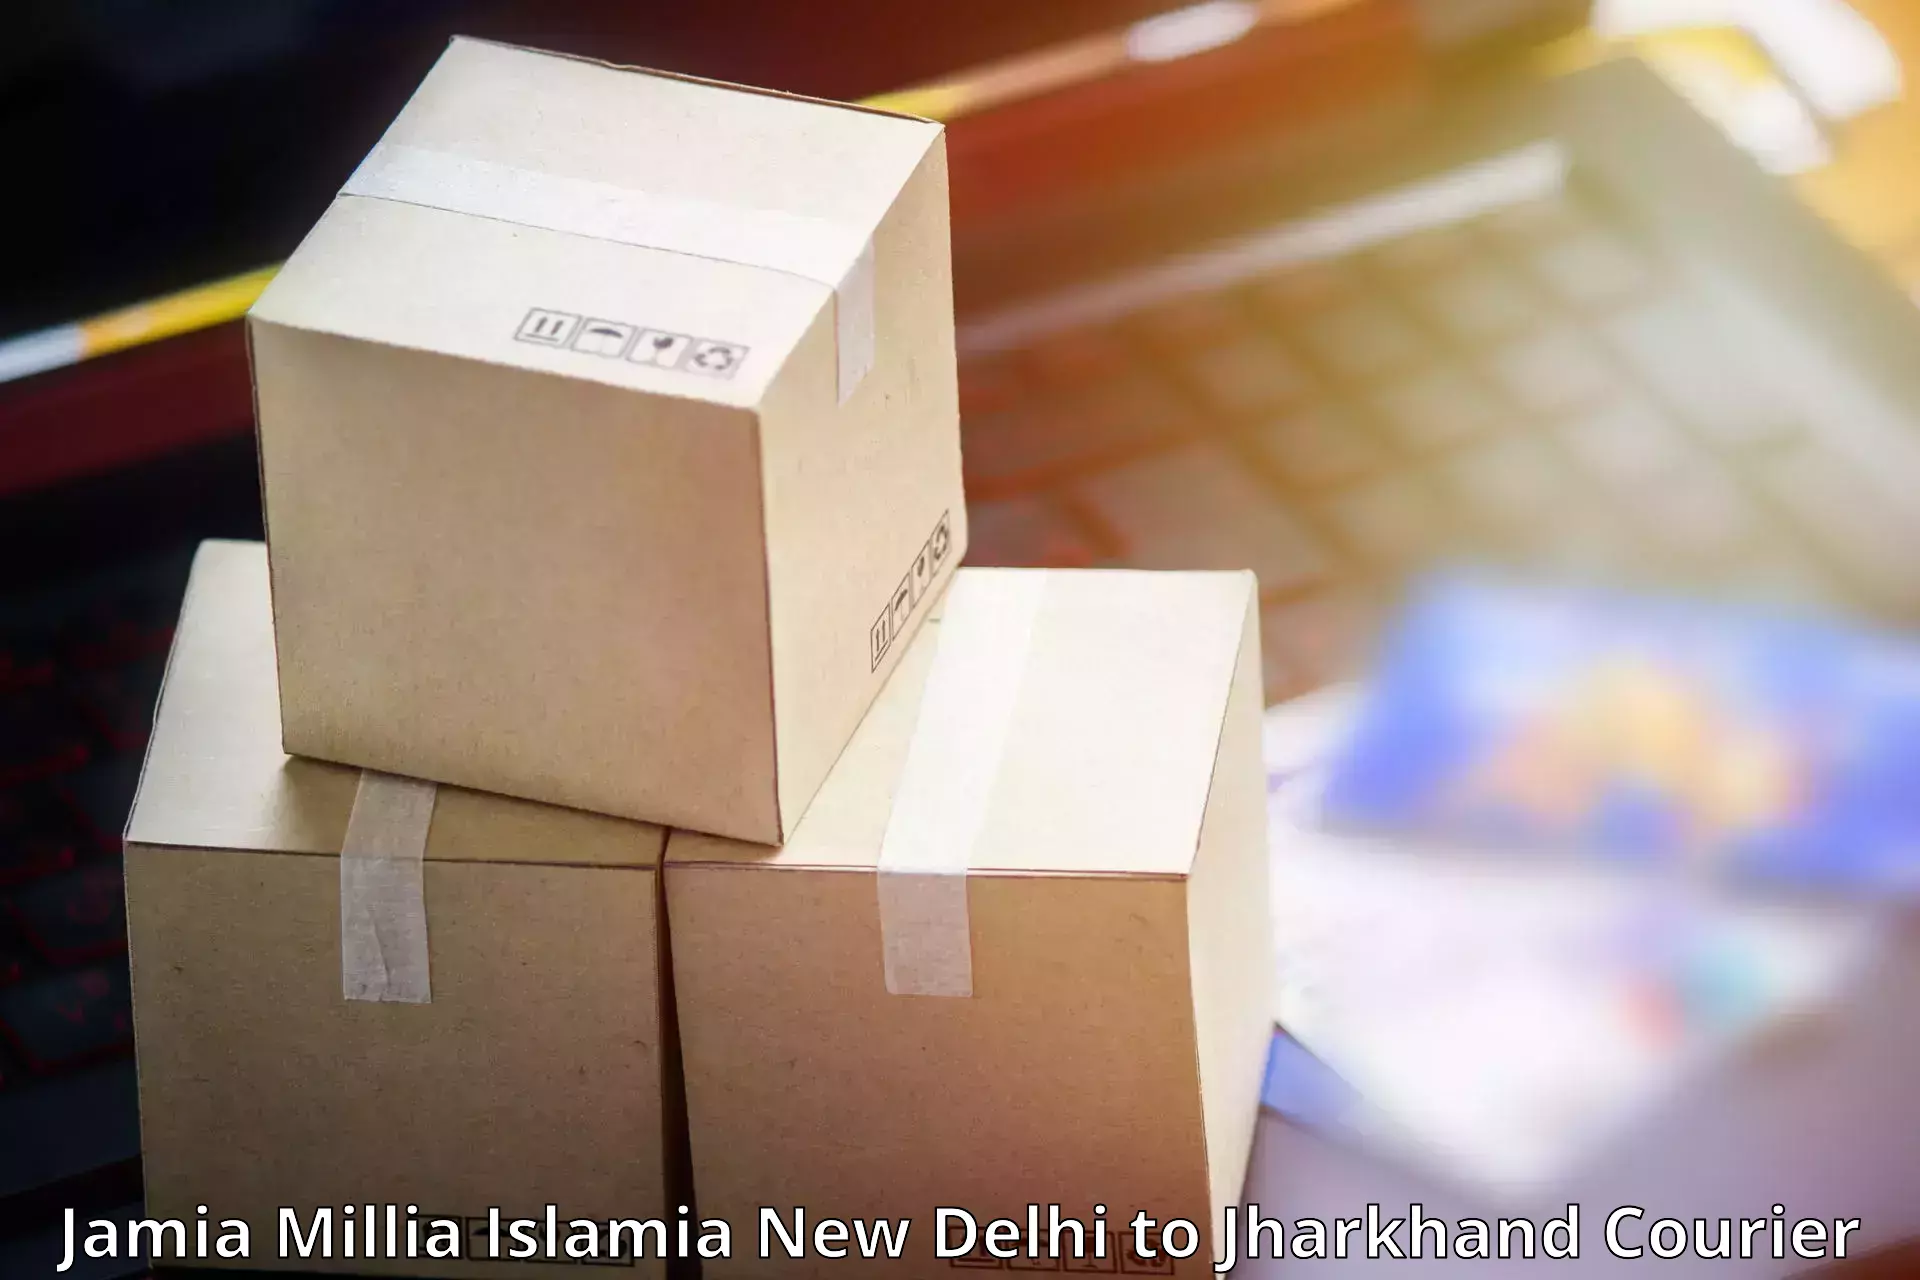 Courier service comparison Jamia Millia Islamia New Delhi to Madhupur